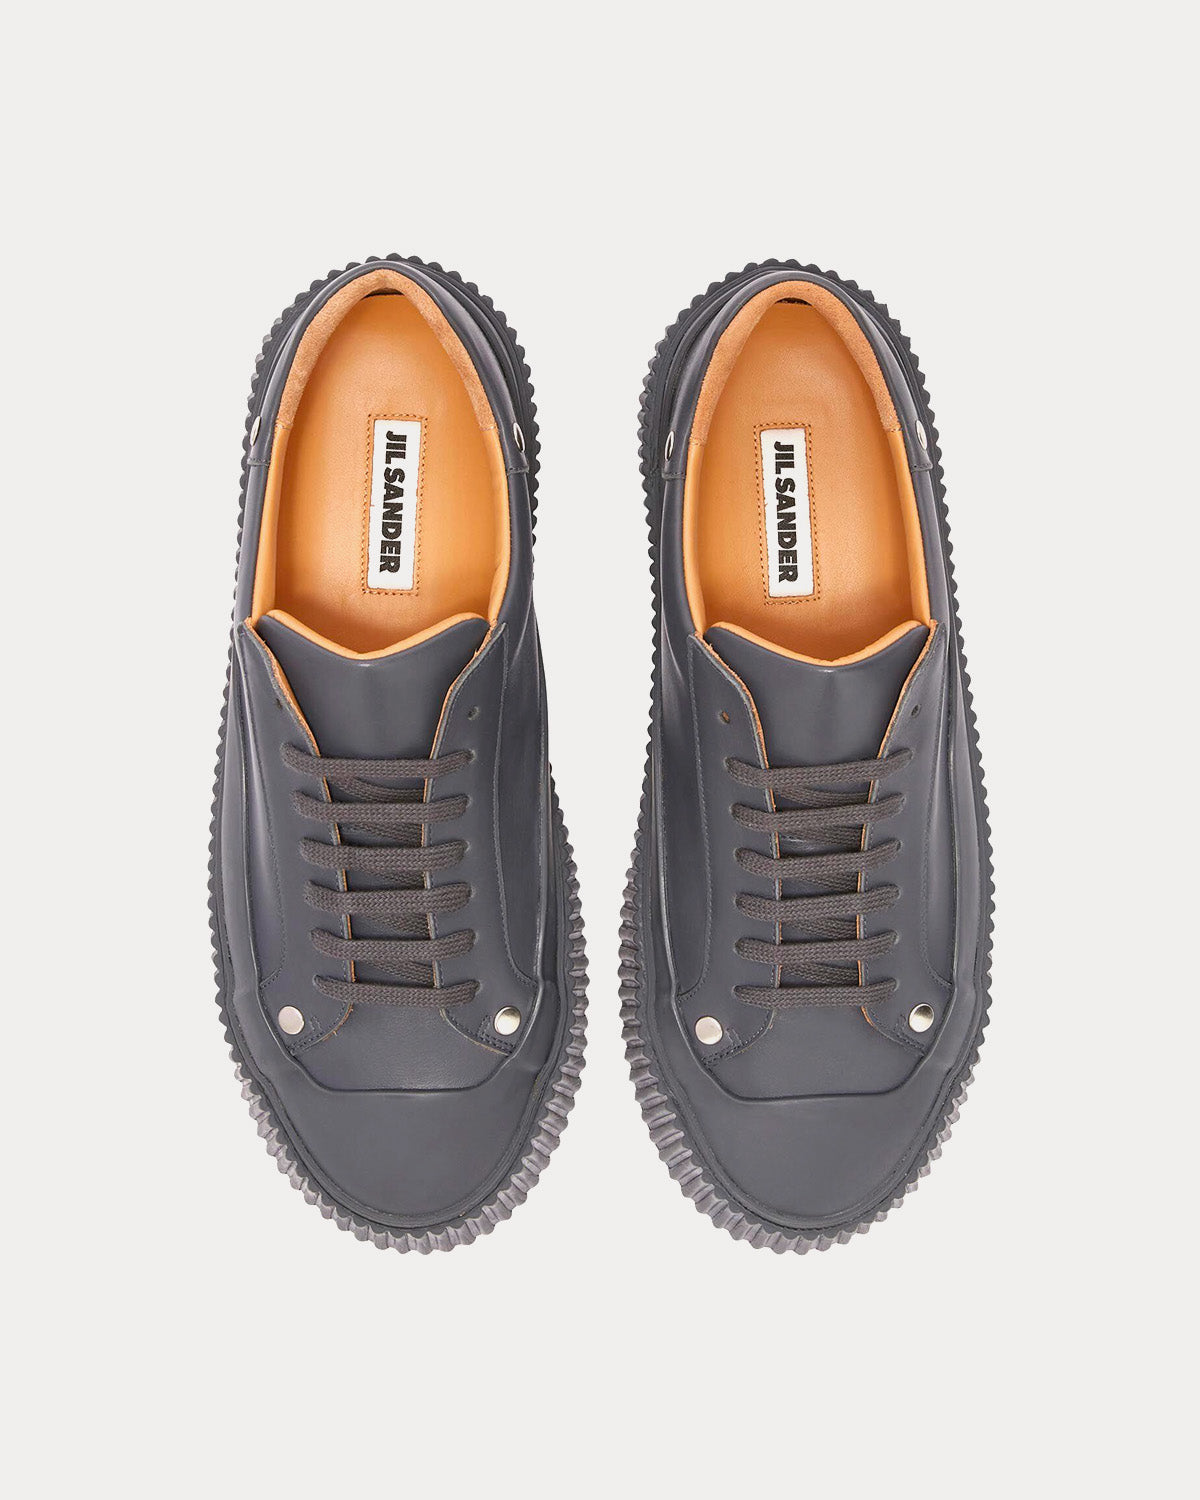 Jil Sander - Platform Leather Dark Grey Low Top Sneakers